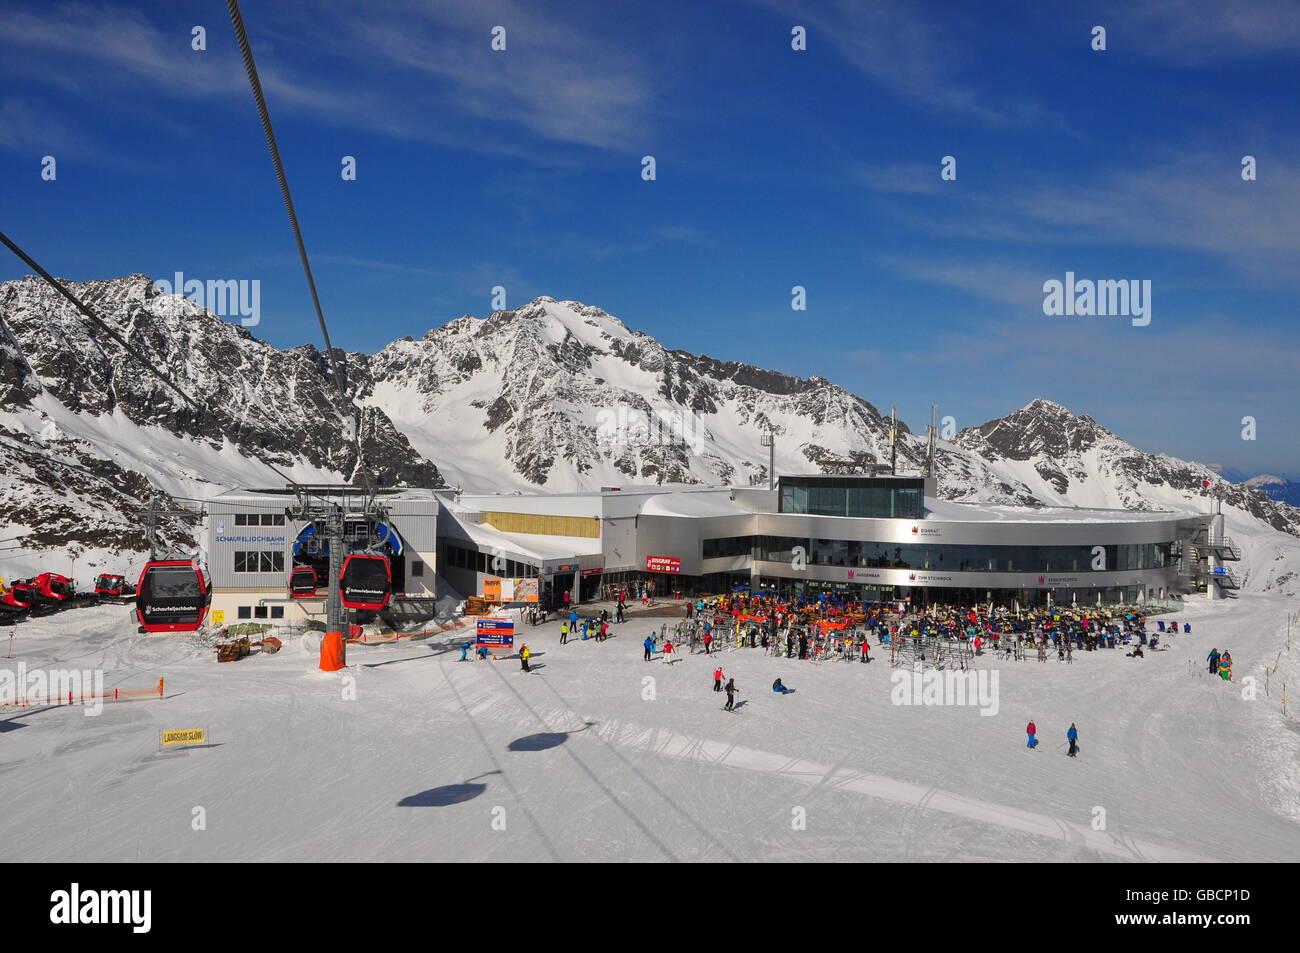 Gletscherskigebiet, Wintersport, Alpen, Bergrestaurant, Bergstation, Eisgrat, Stubai, Tirol, Oesterreich Stock Photo